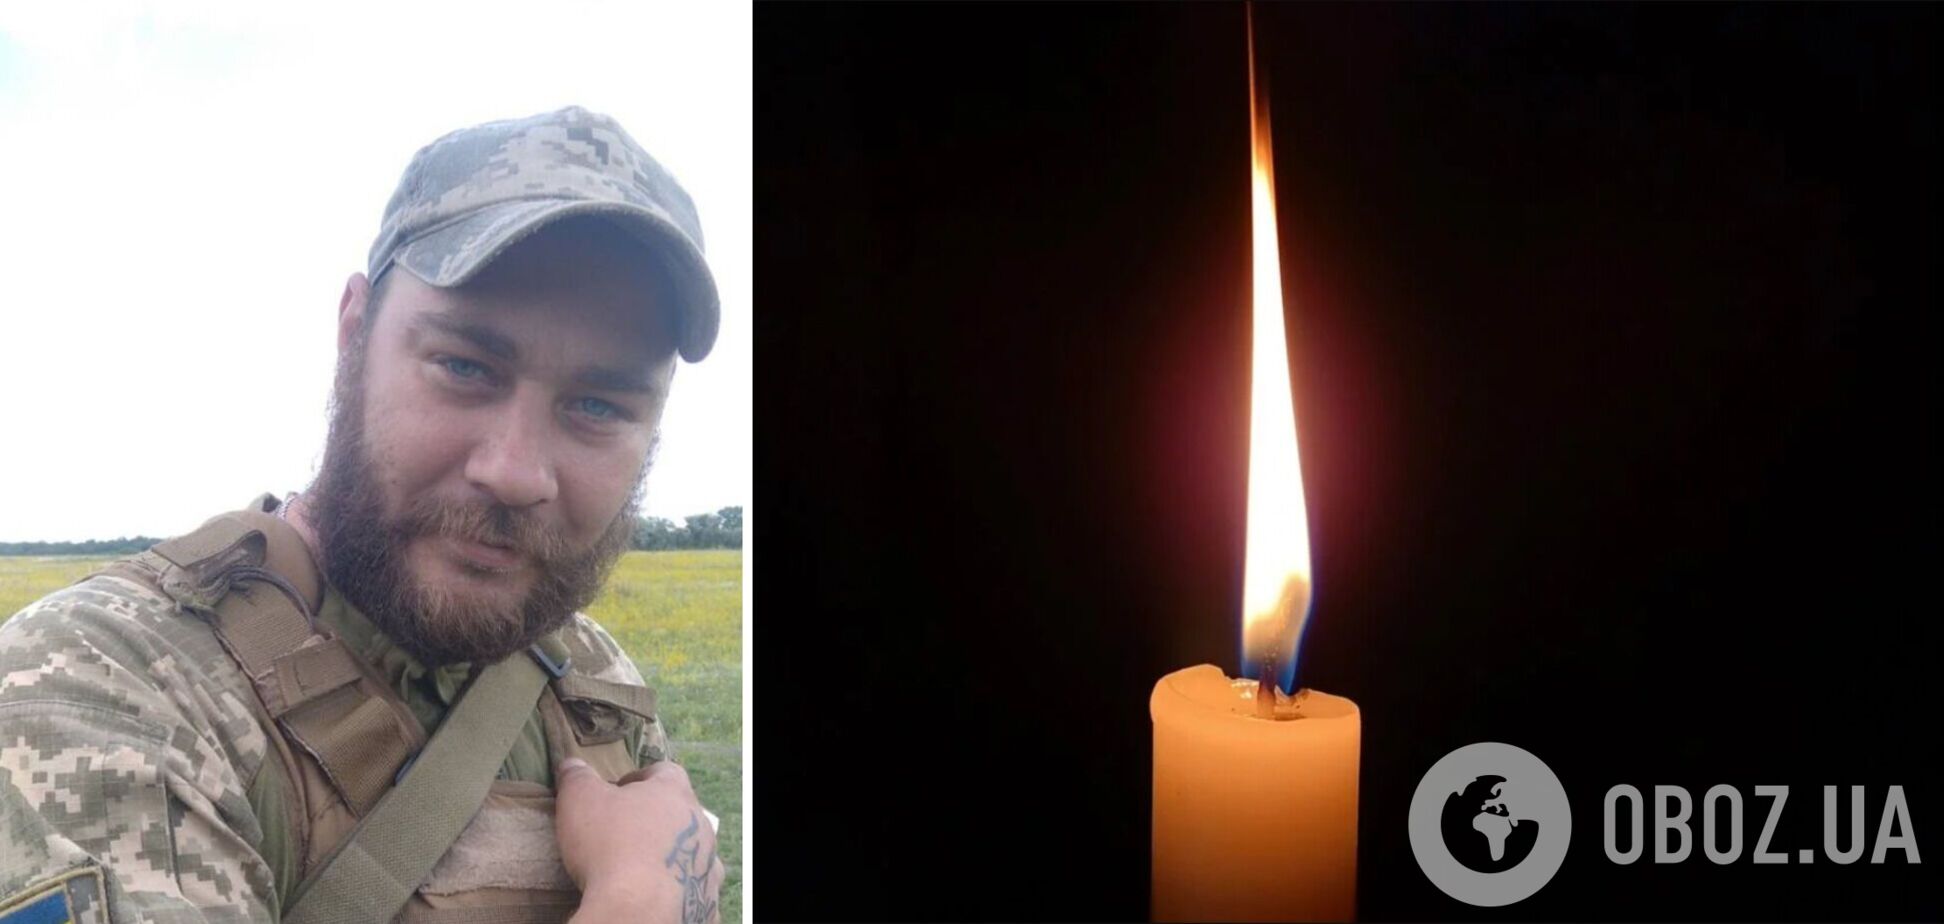 Защитник Украины погиб 29 января